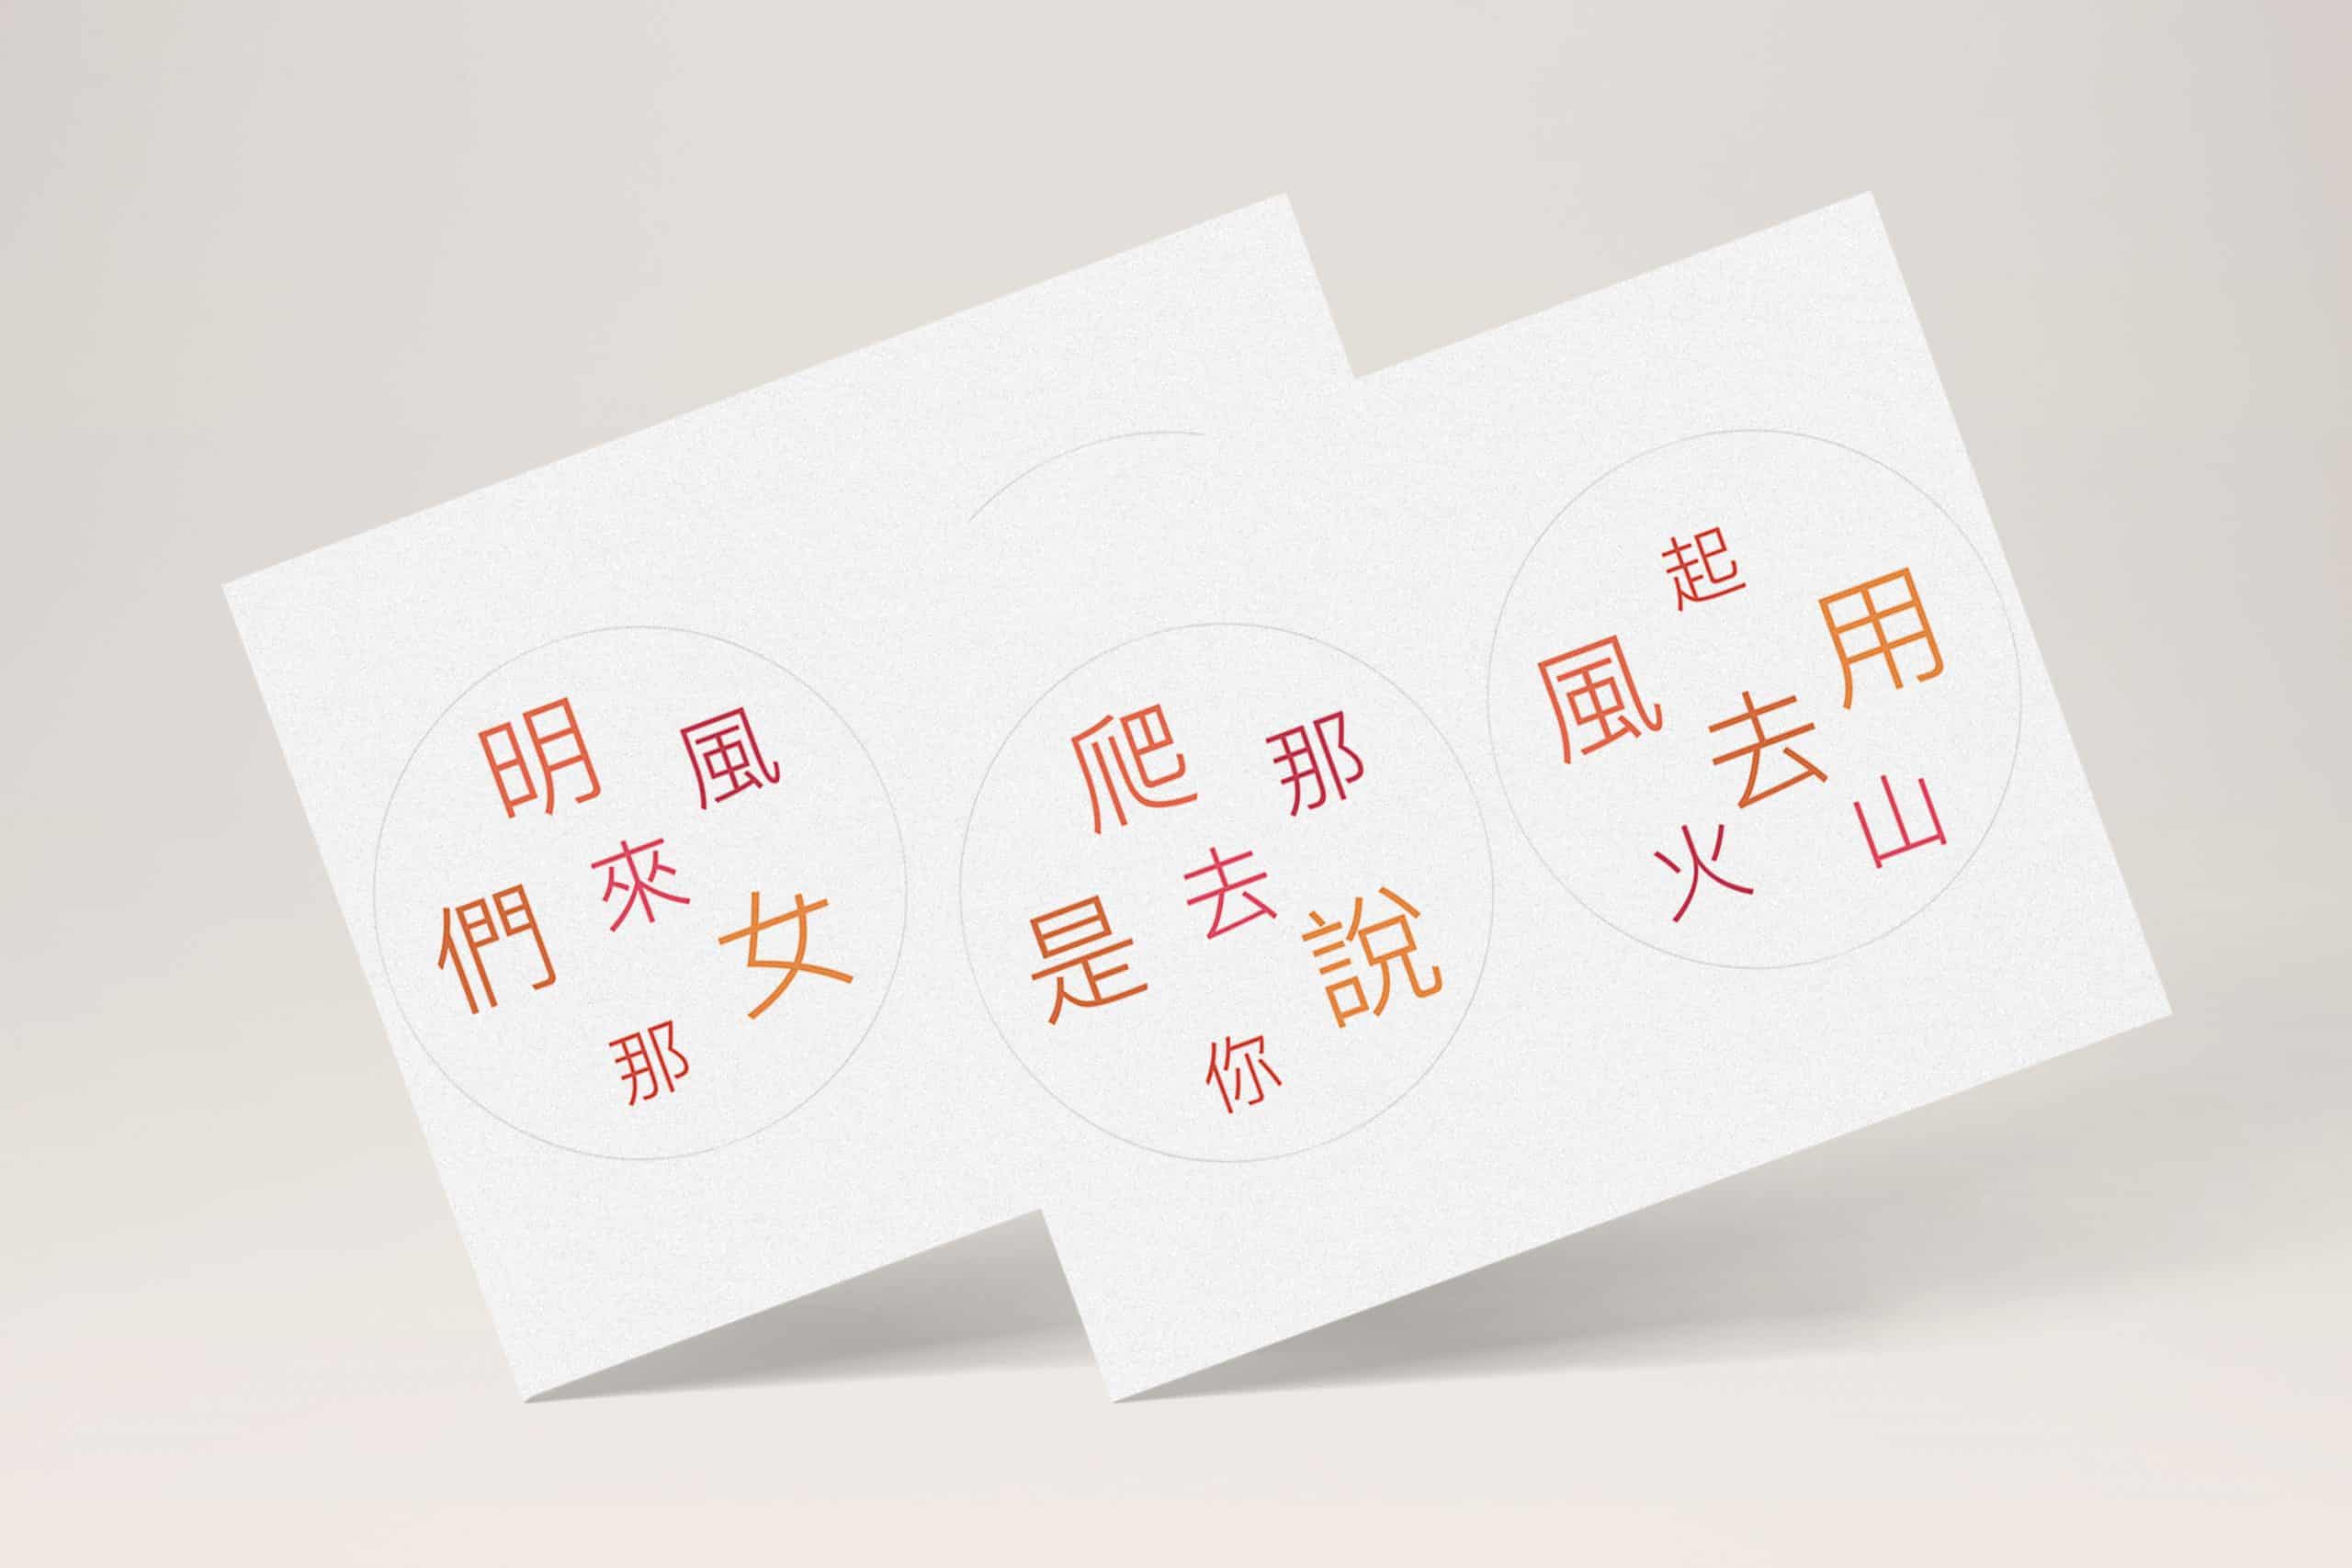 DIY 自製中文字多寶牌 遊戲（圖檔分享） 1